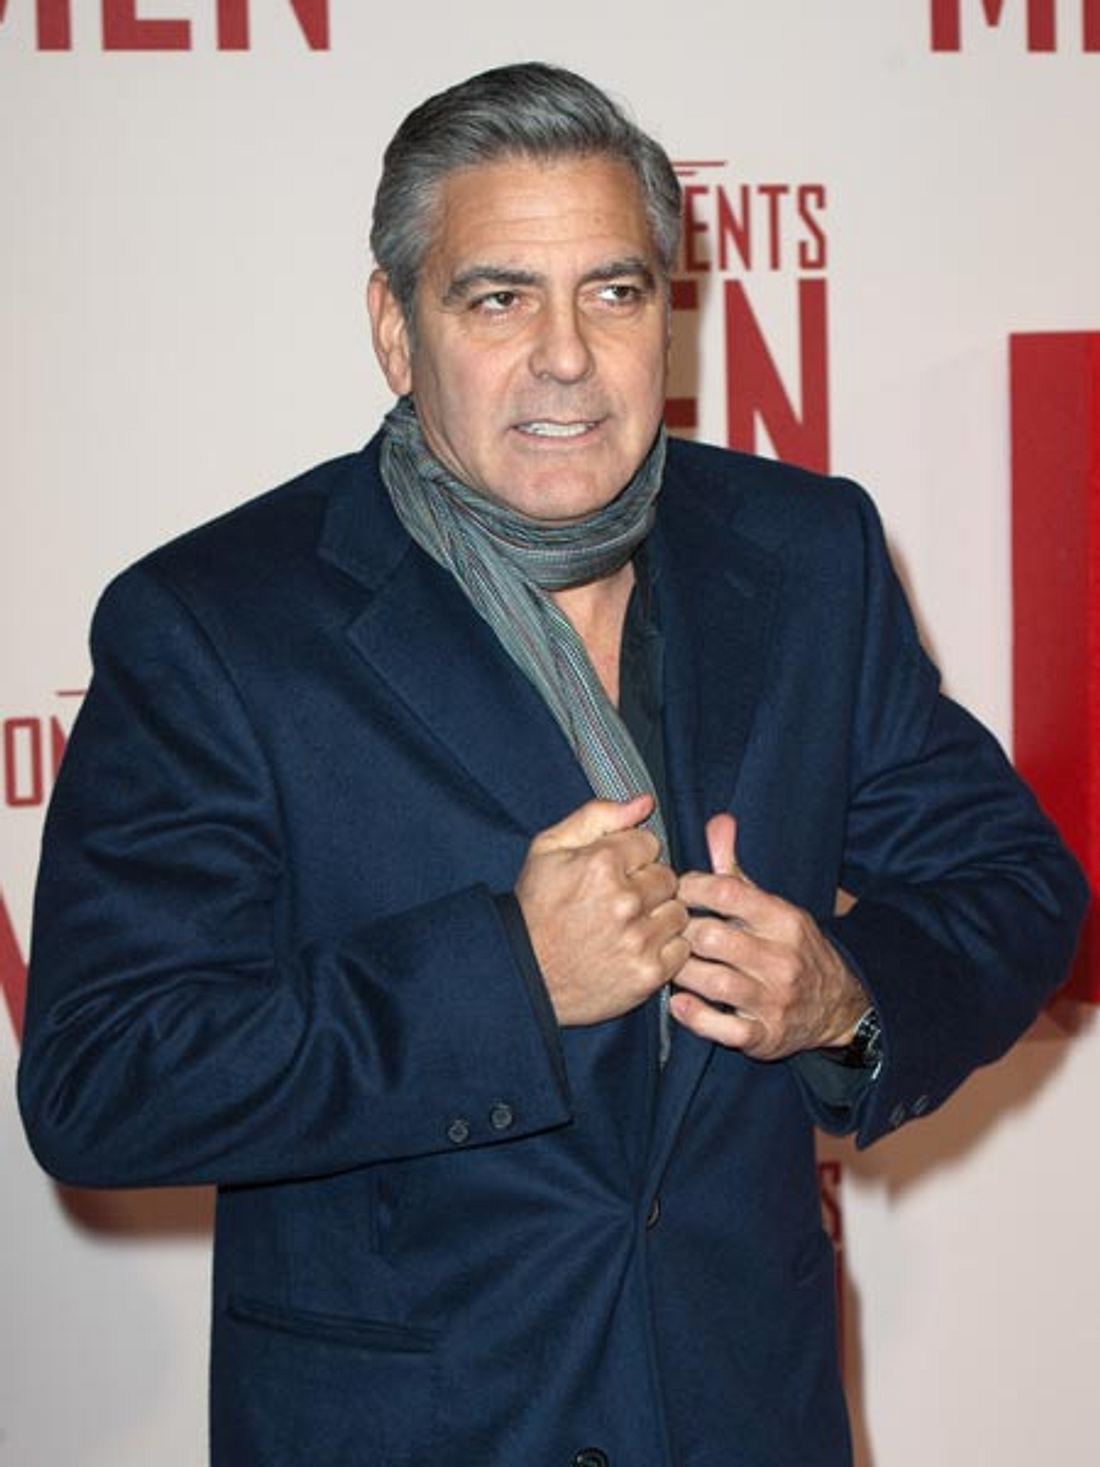 Das Hochzeitsdatum von George Clooney wurde enthüllt!